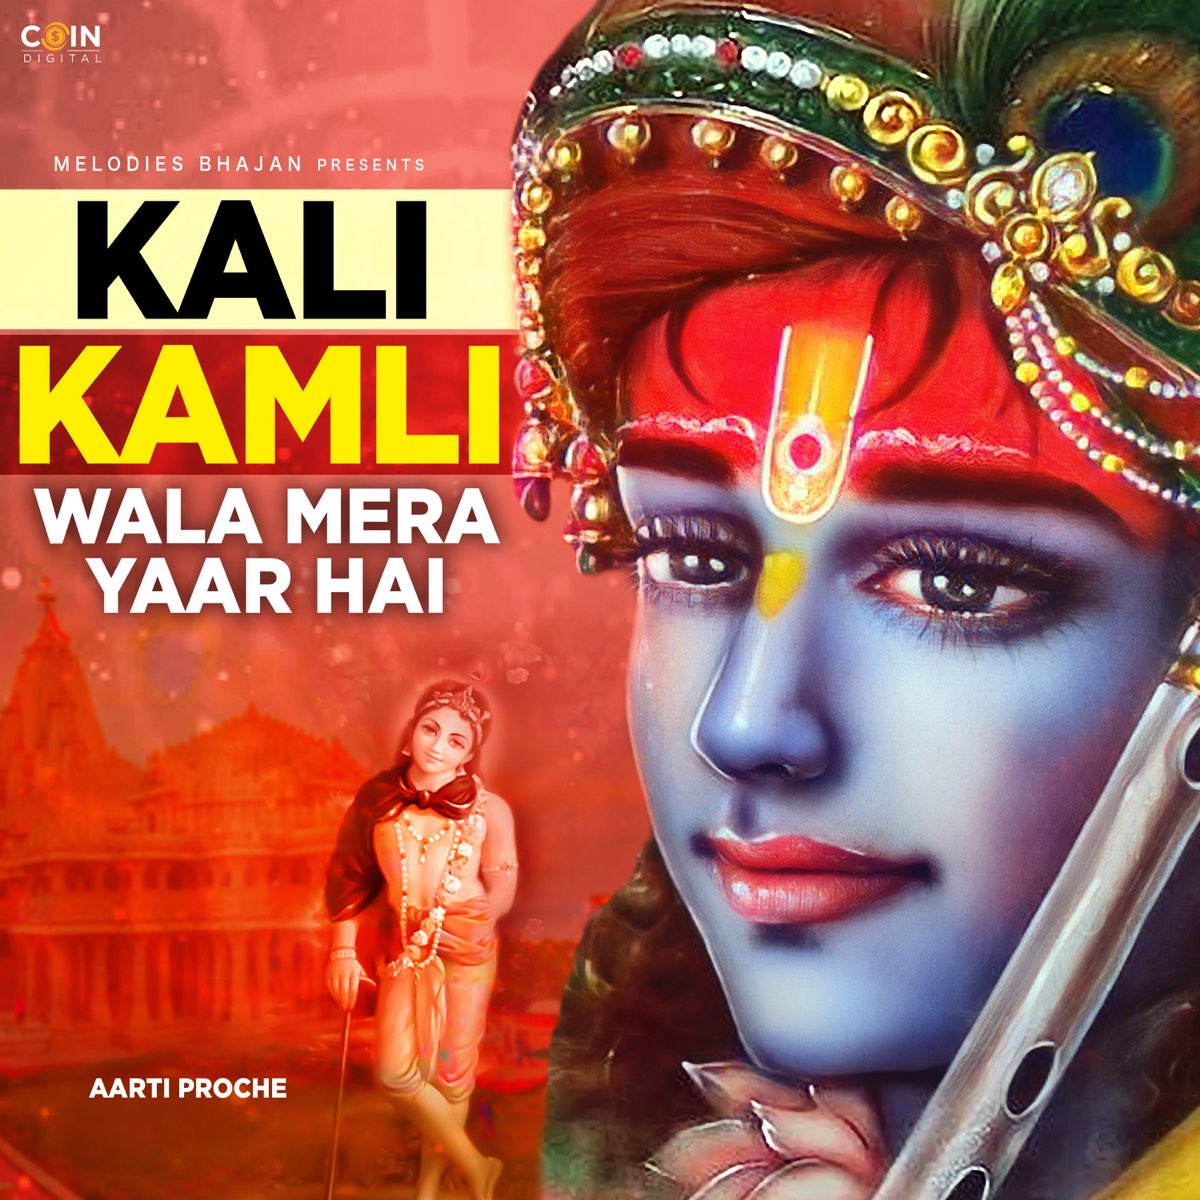 Kali Kamli Wala Mera Yaar Hai - Single by Aarti Proche on Apple Music